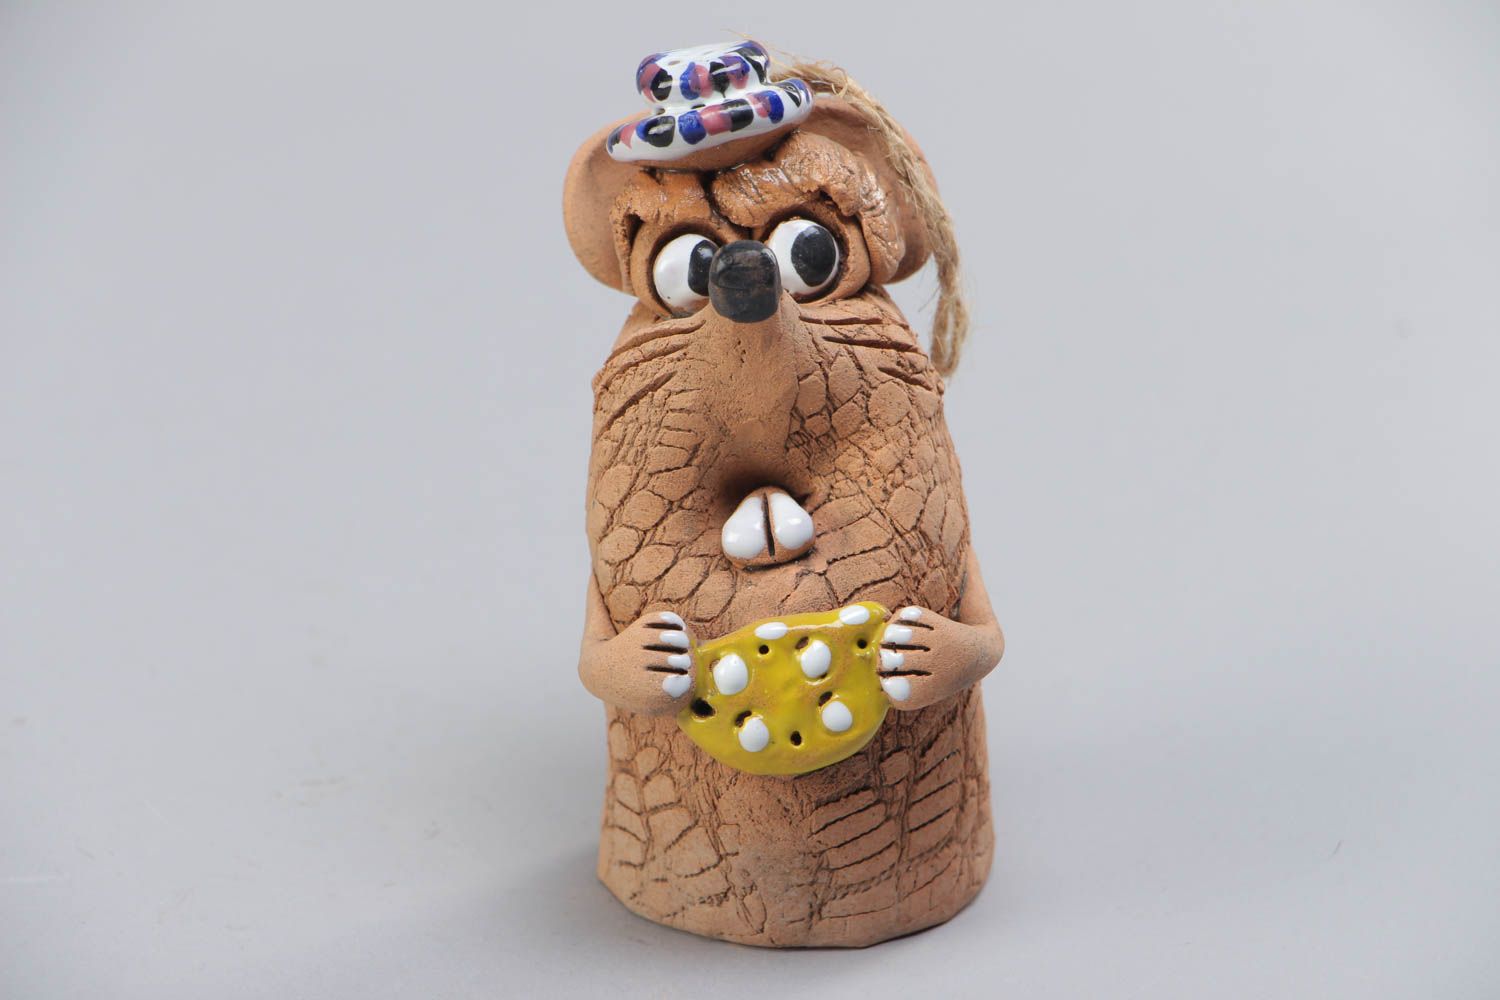 Расписанный красками глиняный колокольчик в виде мышки с сыром ручной работы фото 2